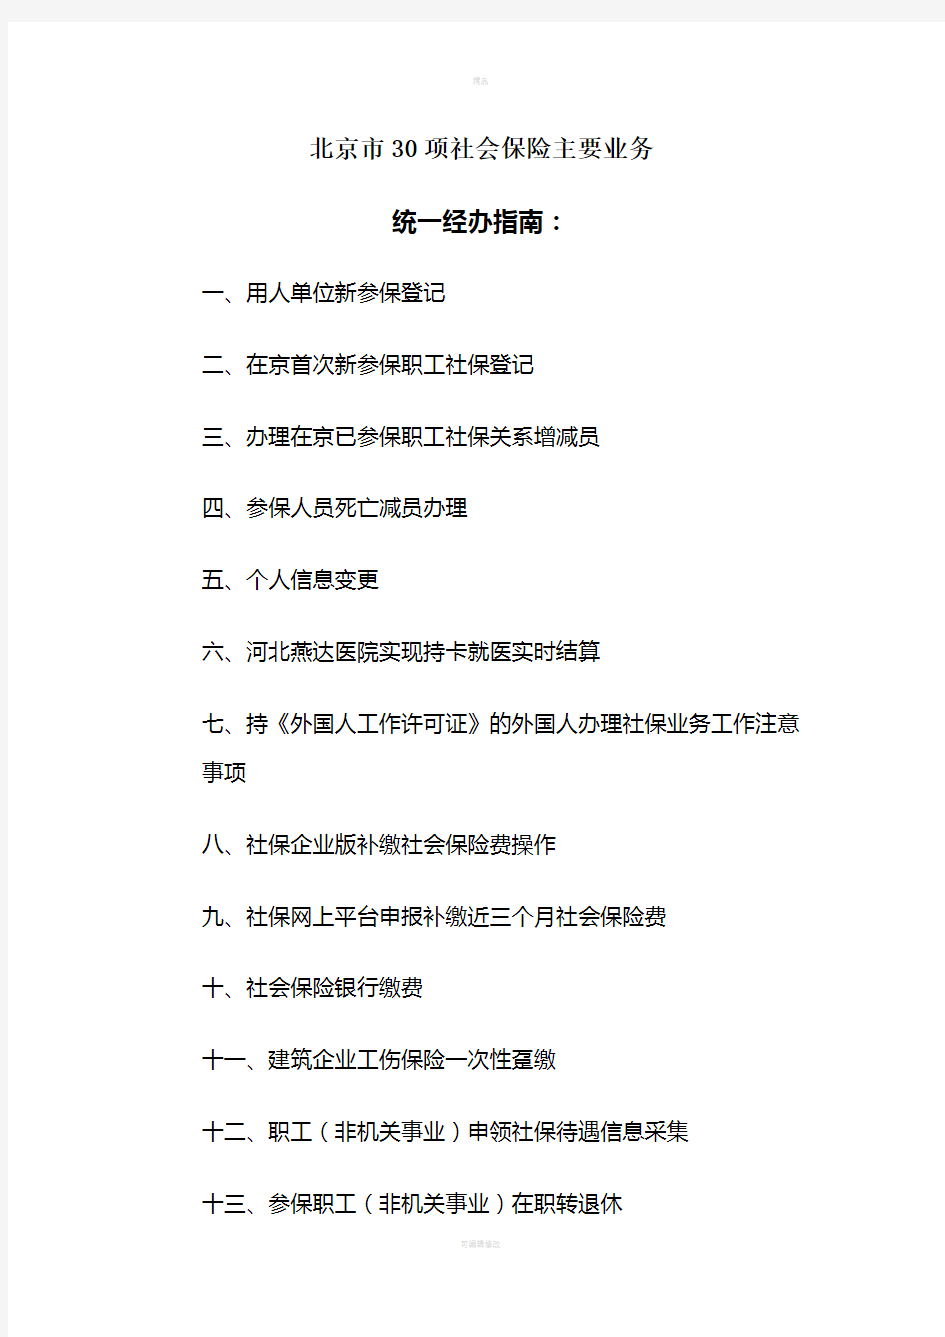 北京市30项社会保险主要业务统一经办指南(1)